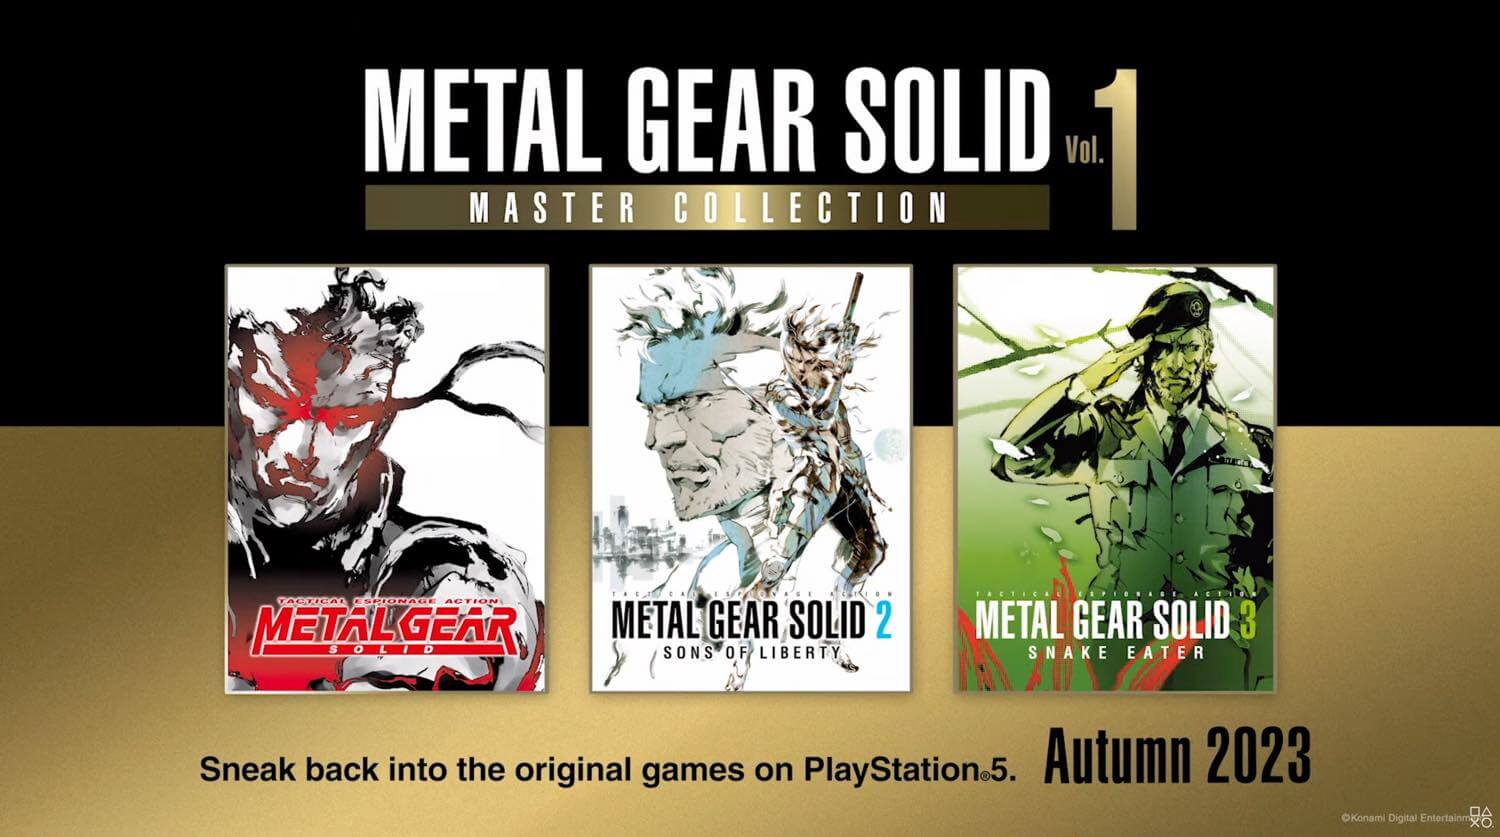 「メタルギアソリッド3」のリメイク版『メタルギア ソリッド デルタ: スネークイーター』発表 − PS5向けに発売へ